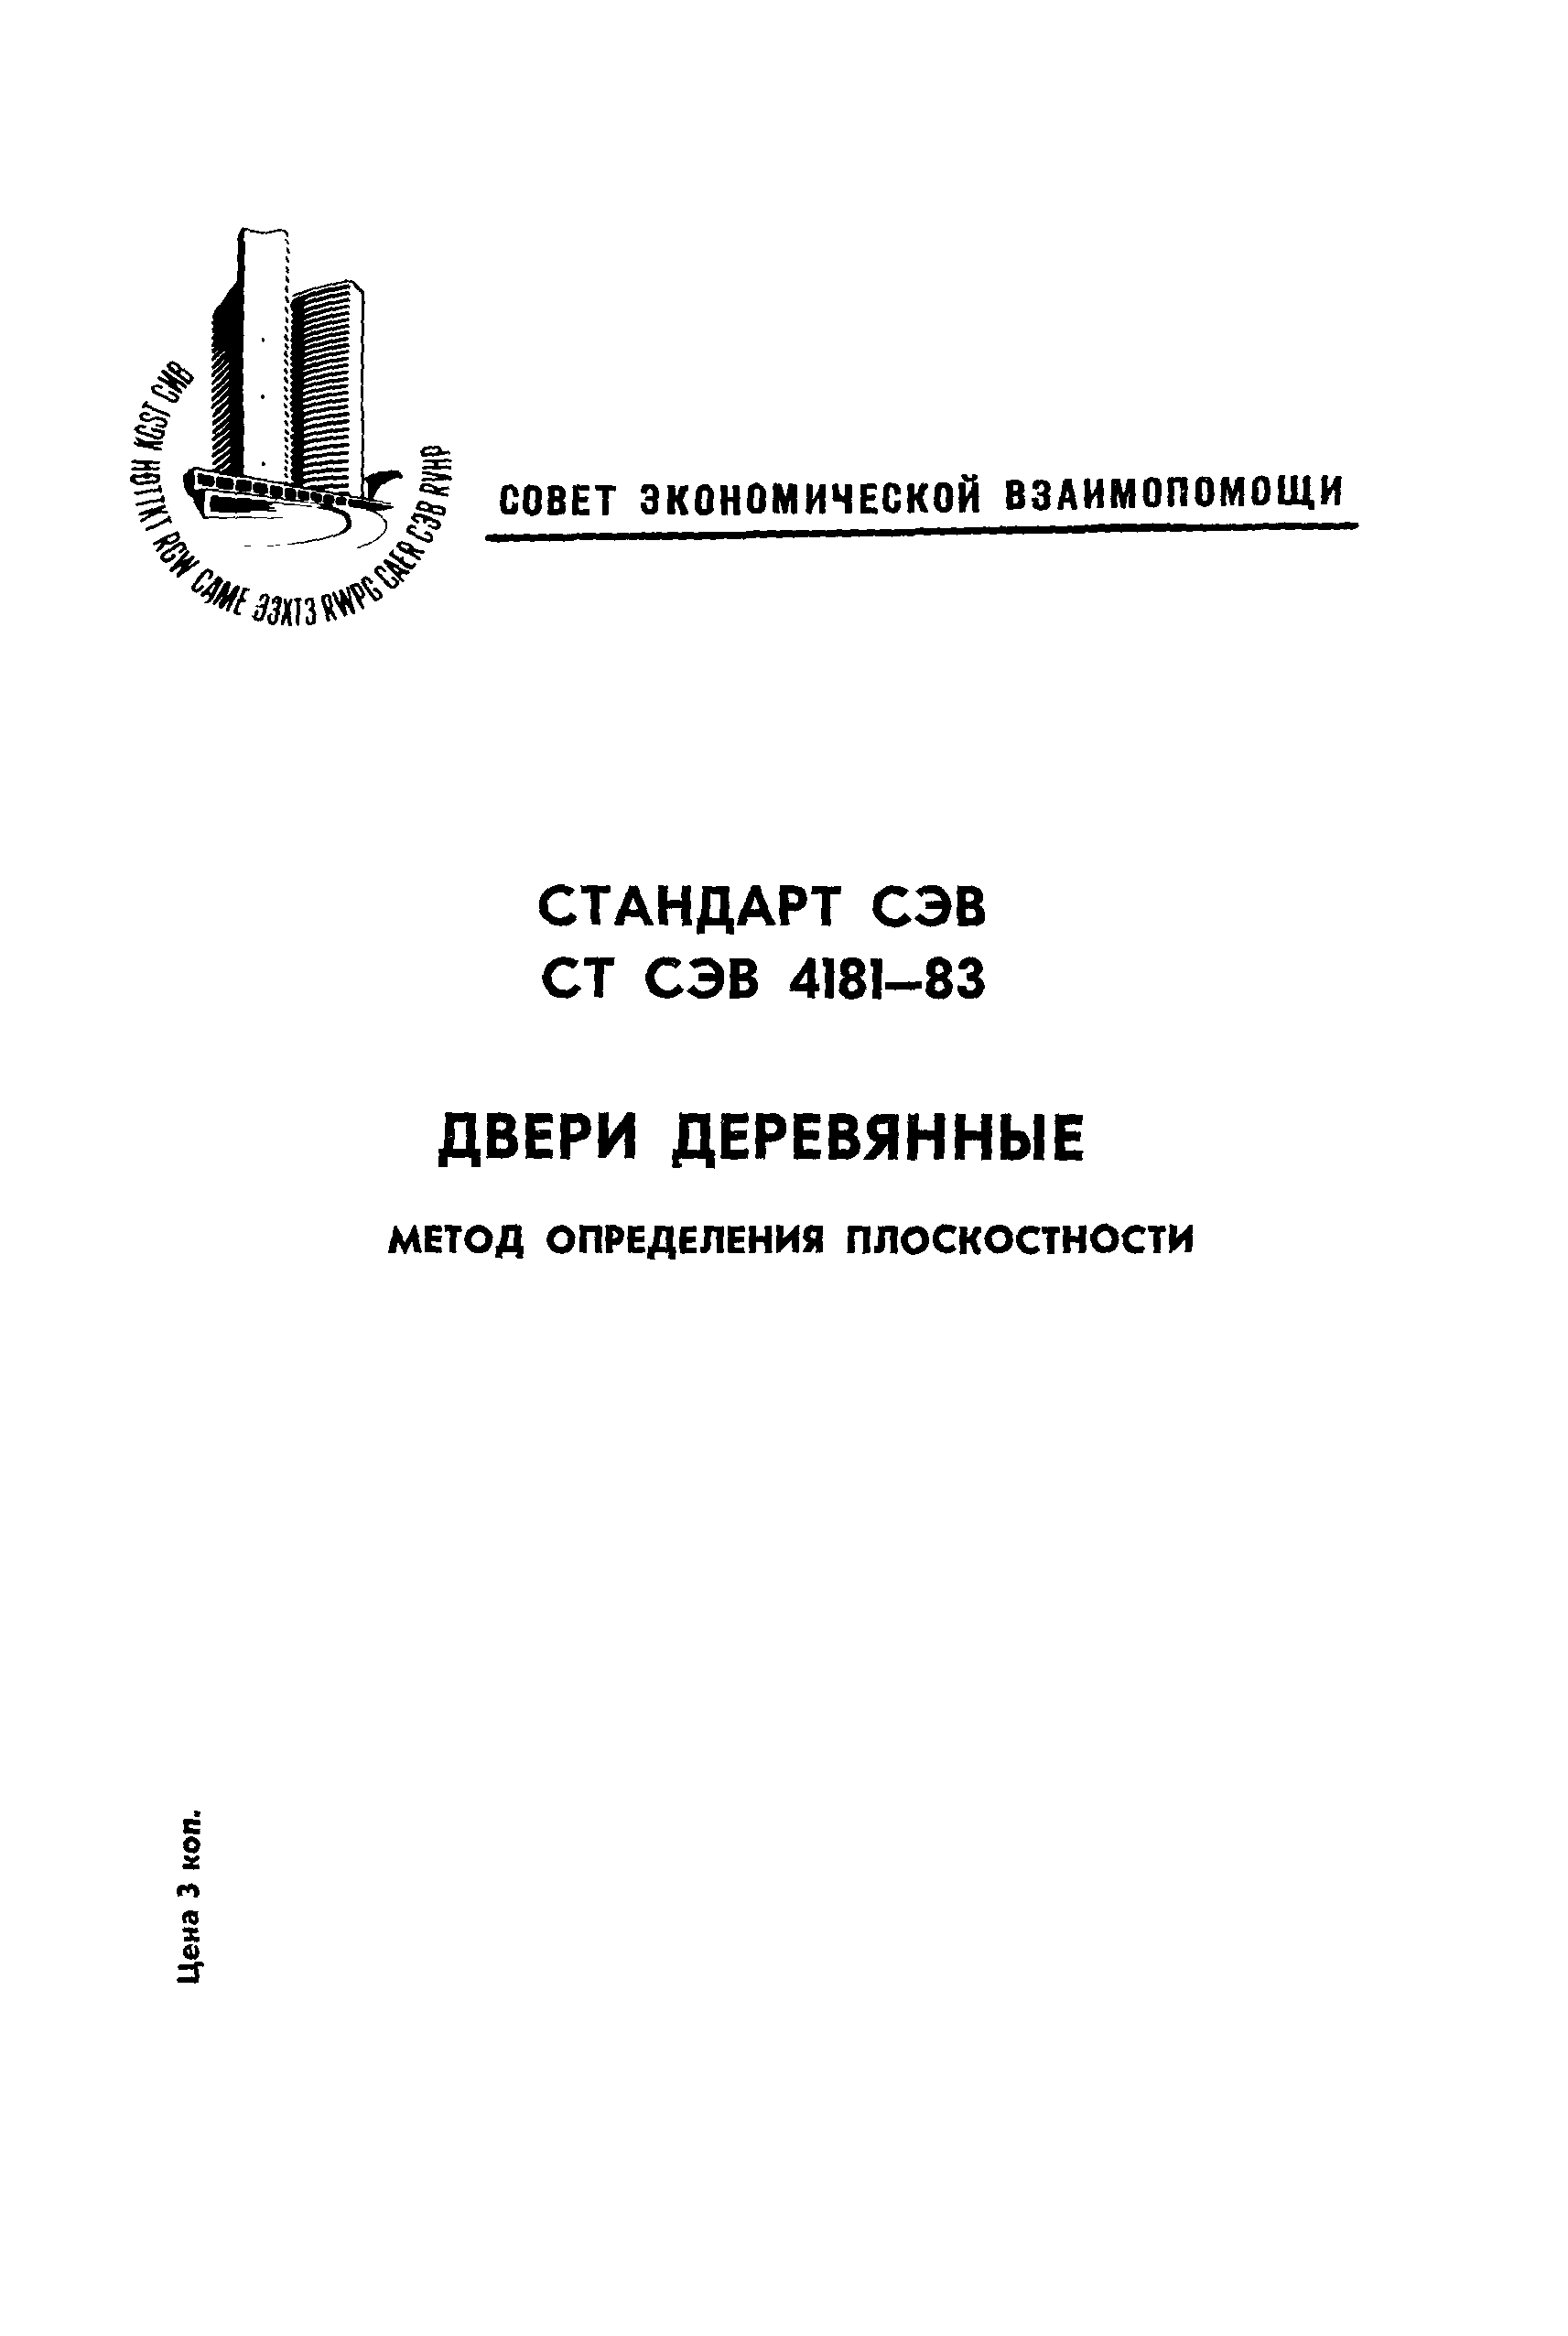 СТ СЭВ 4181-83